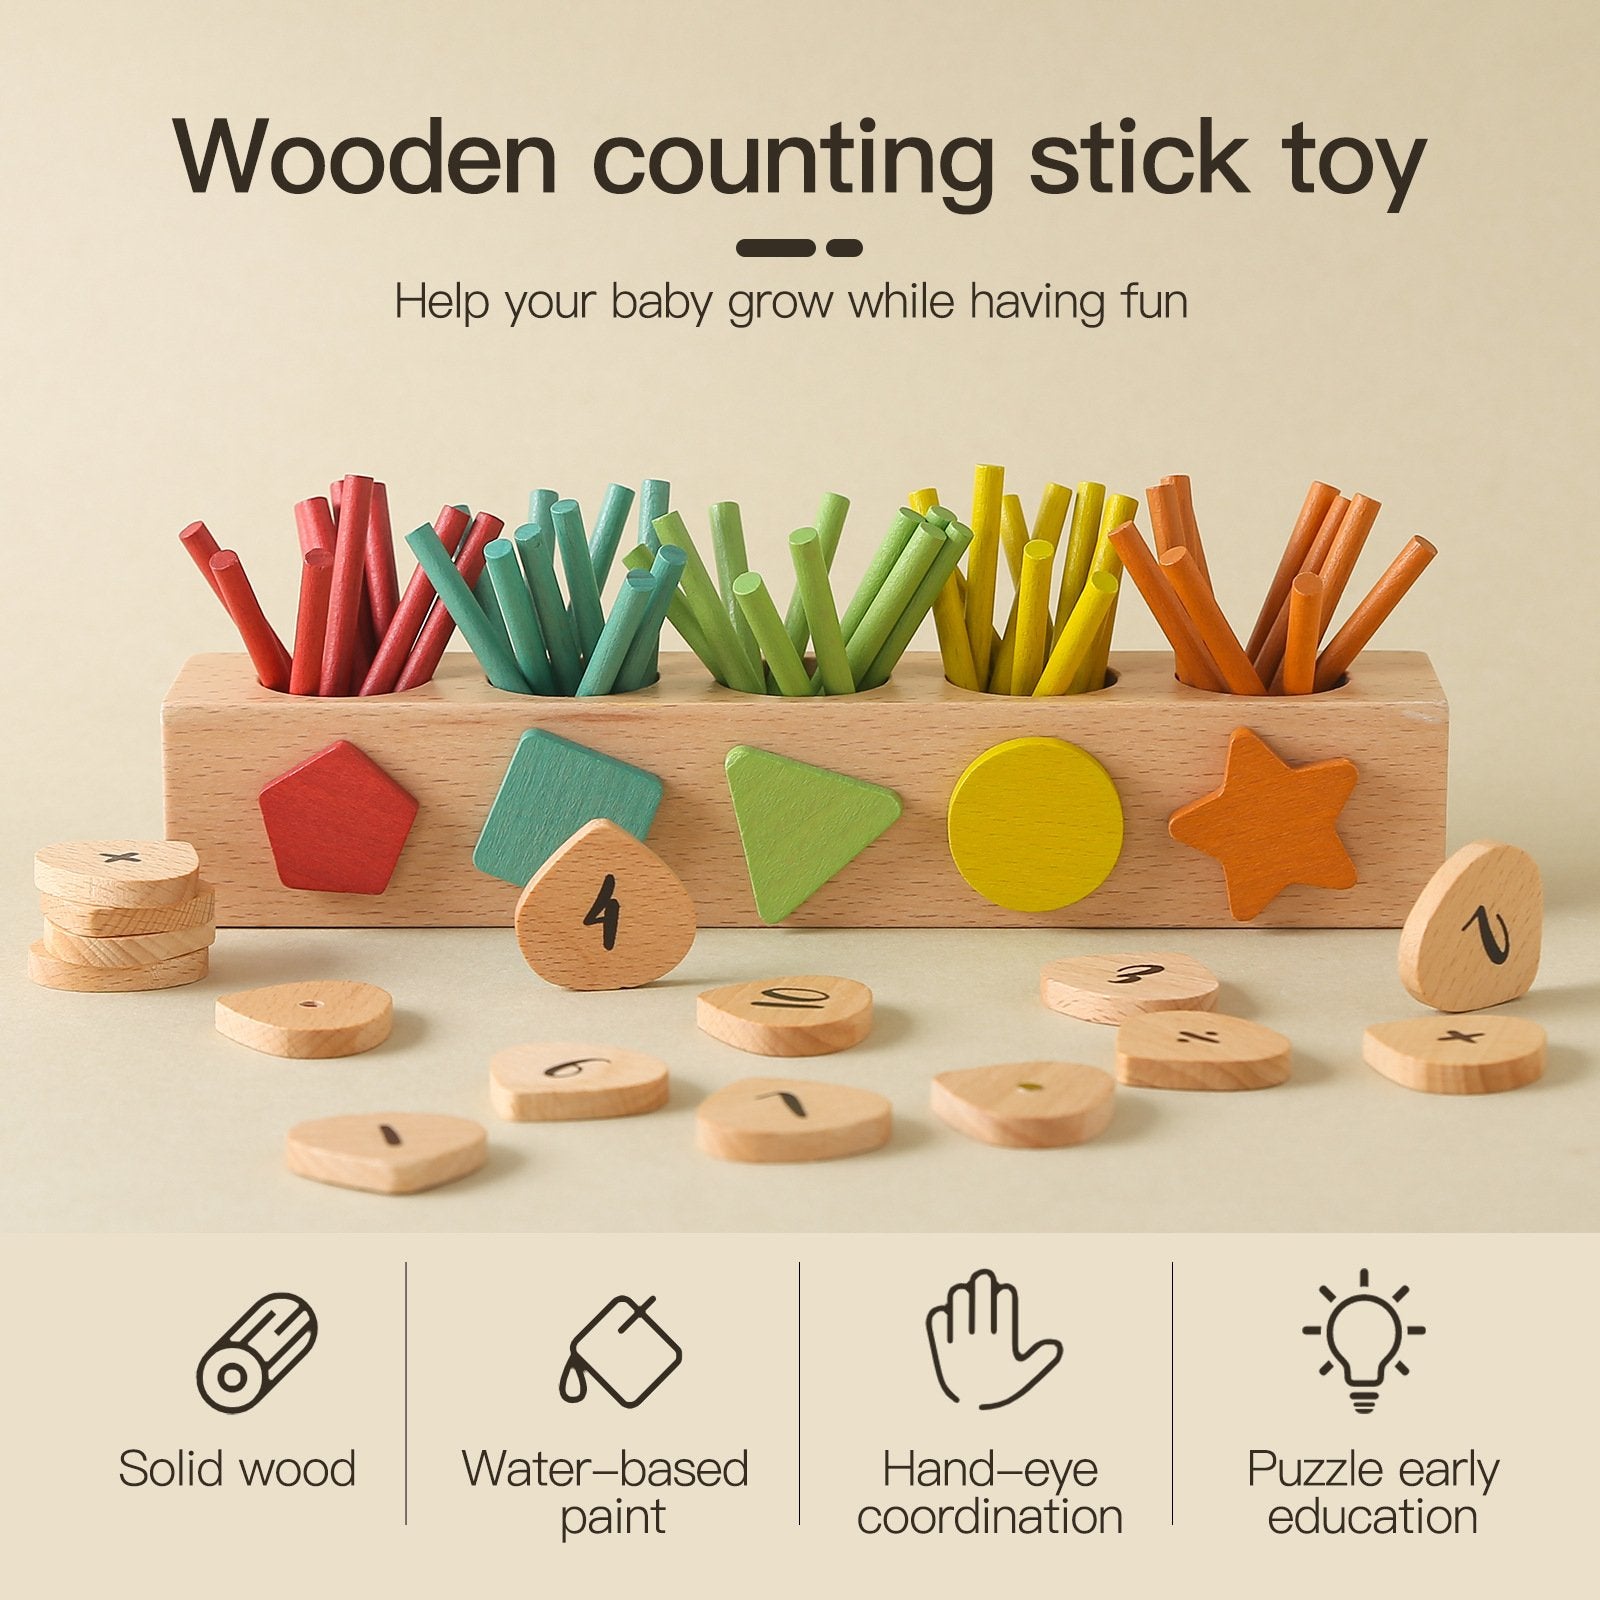 Zabawki Montessori Dla Dzieci Do Liczenia Matematycznego